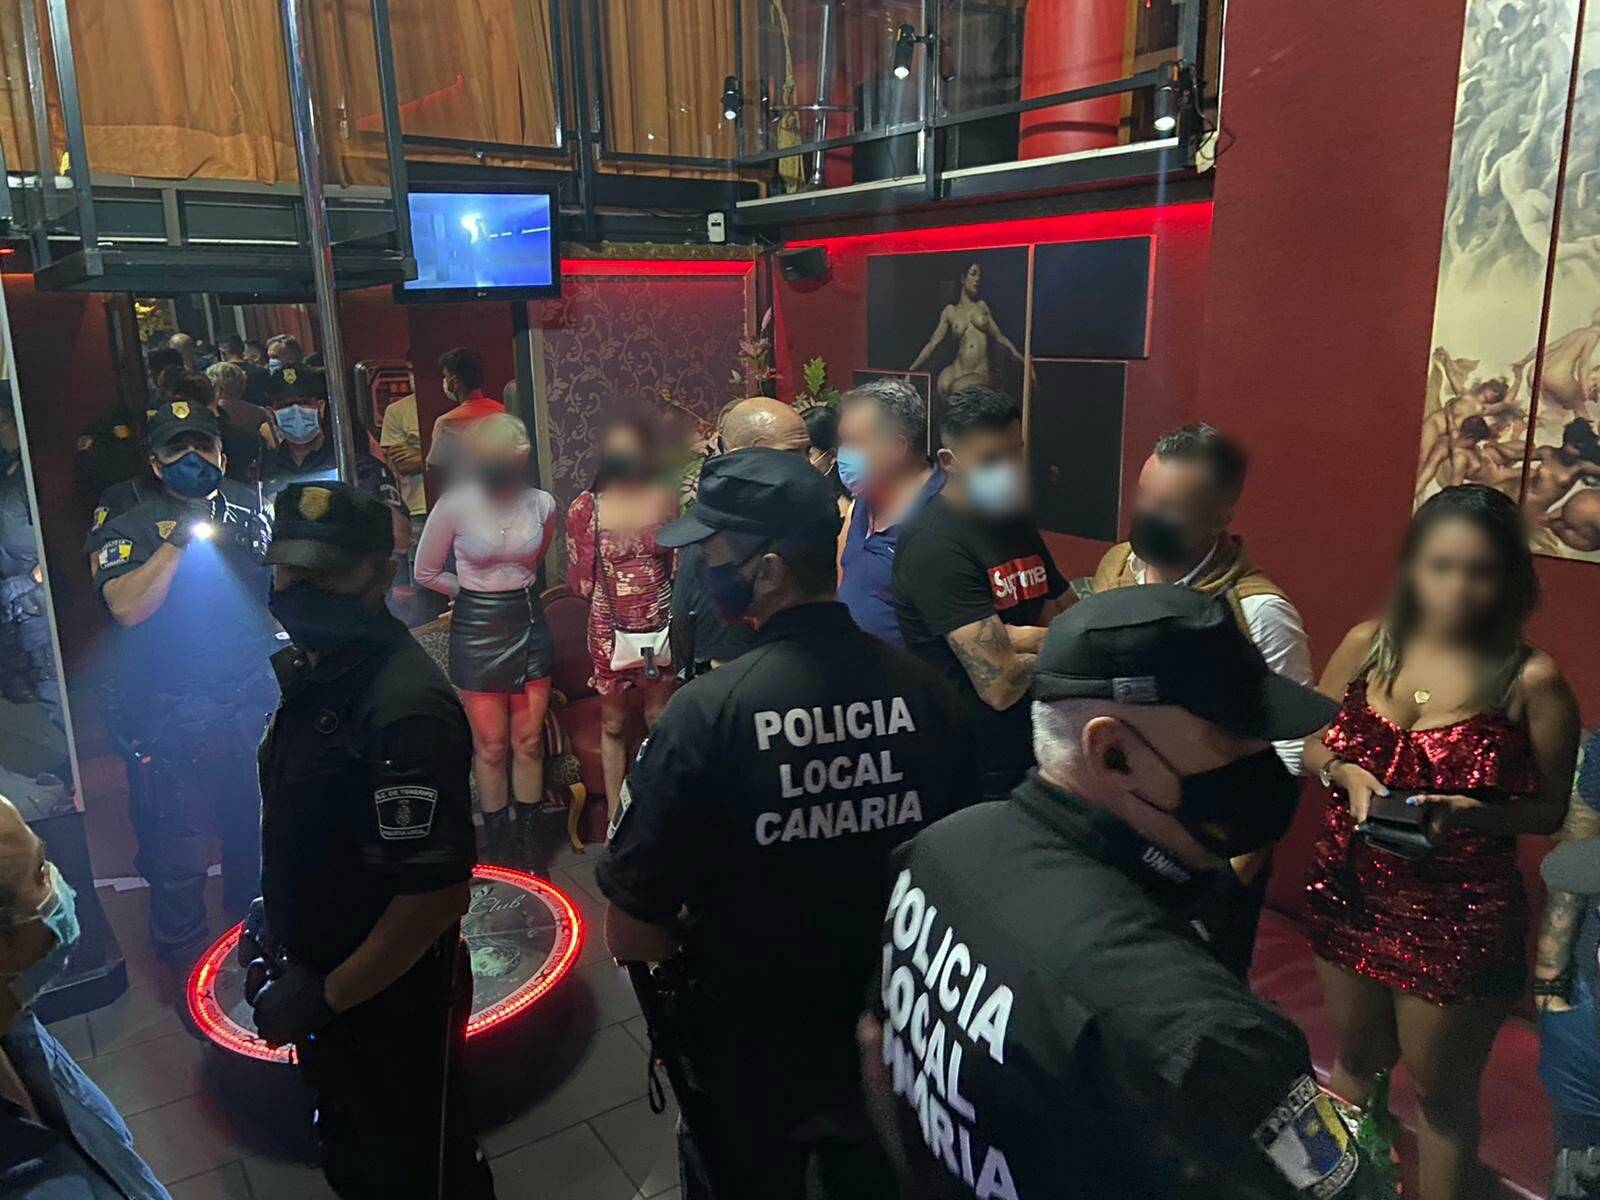 Nogometaši uhapšeni u noćnom klubu s prostitutkama i drogom